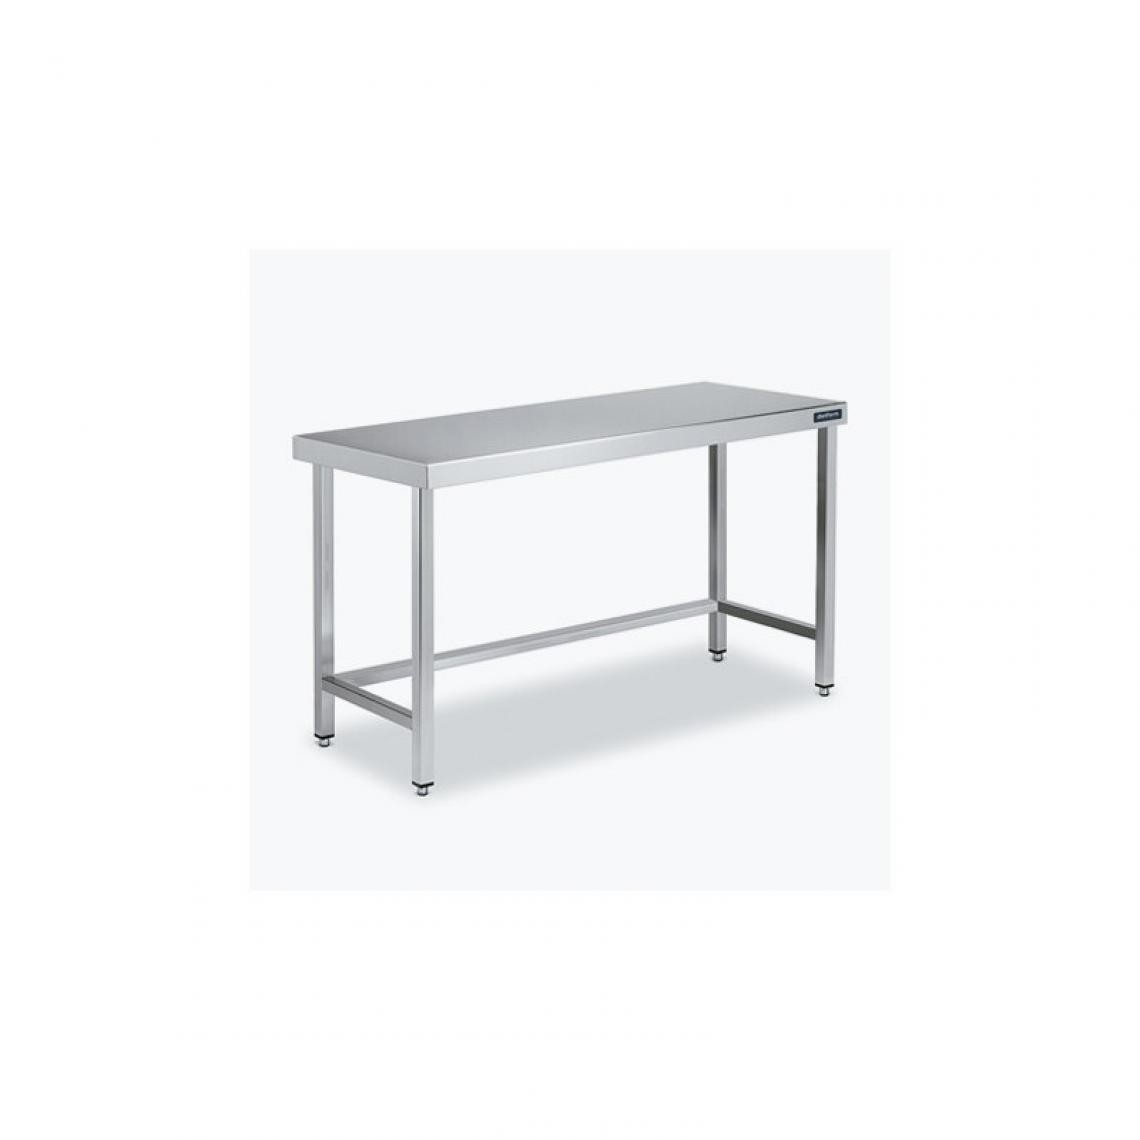 DISTFORM - Table Centrale 600x600 avec Renforts - Distform - Inox 18/102600x600x850mm - Tables à manger